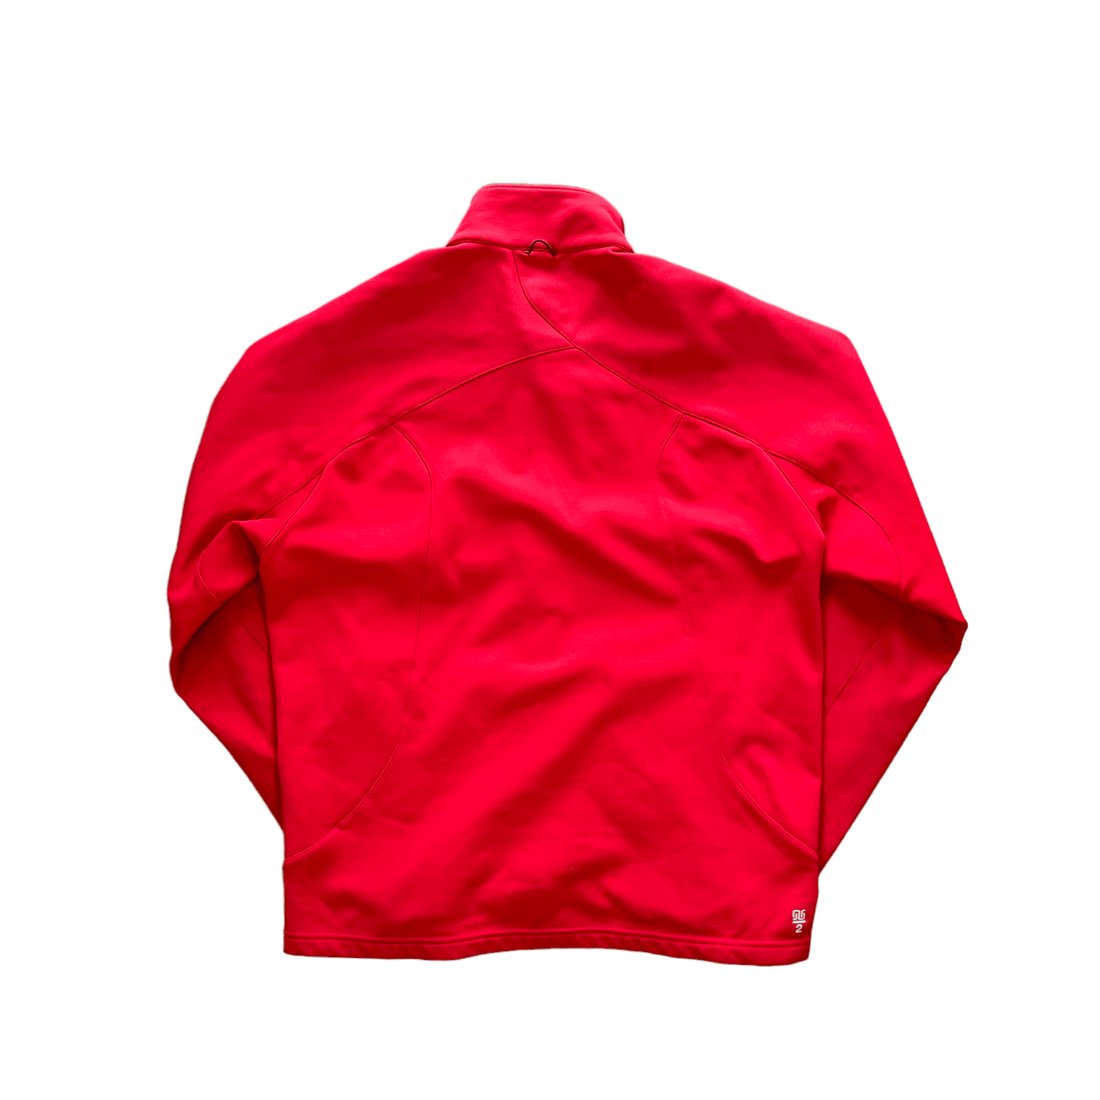 Vintage Red Nike ACG Jacket - Large - The Streetwear Studio